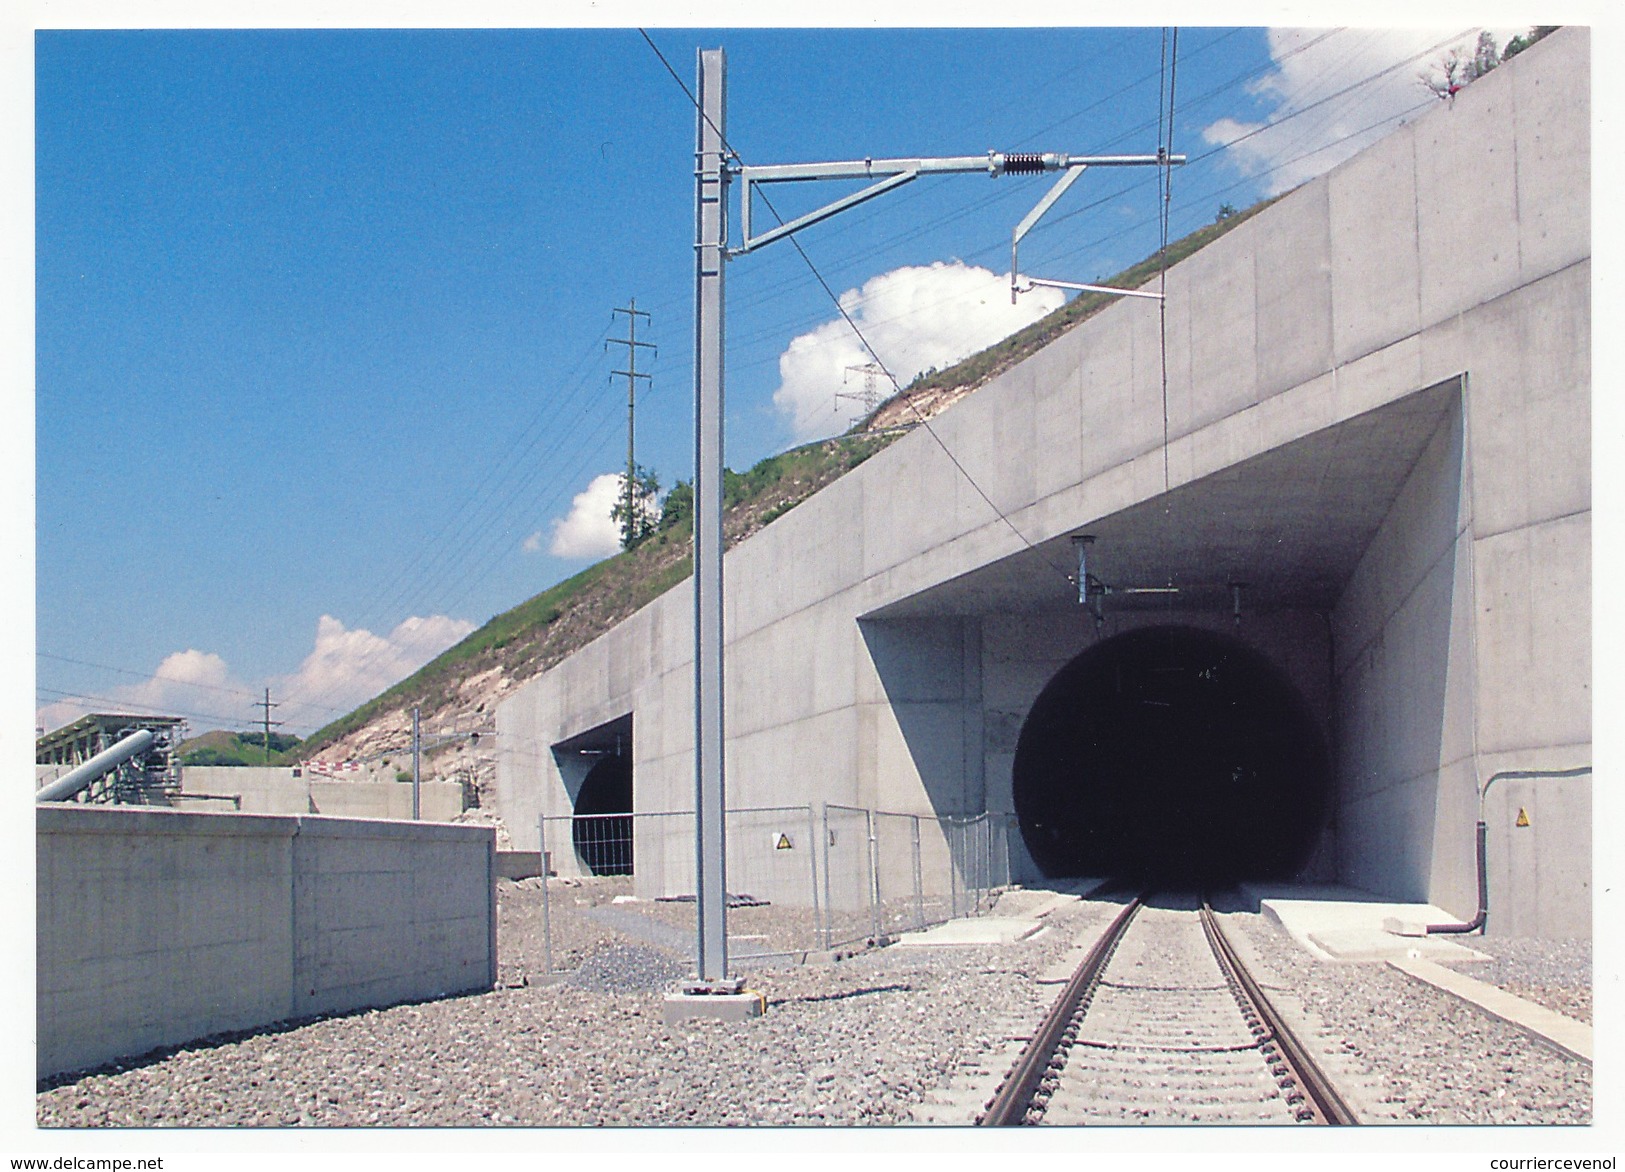 SUISSE - 4 ENTIERS POSTAUX (CP) - Tunnel de base du Lötsberg - Neufs et oblitérés Jour d'émission 6 Mars 2007